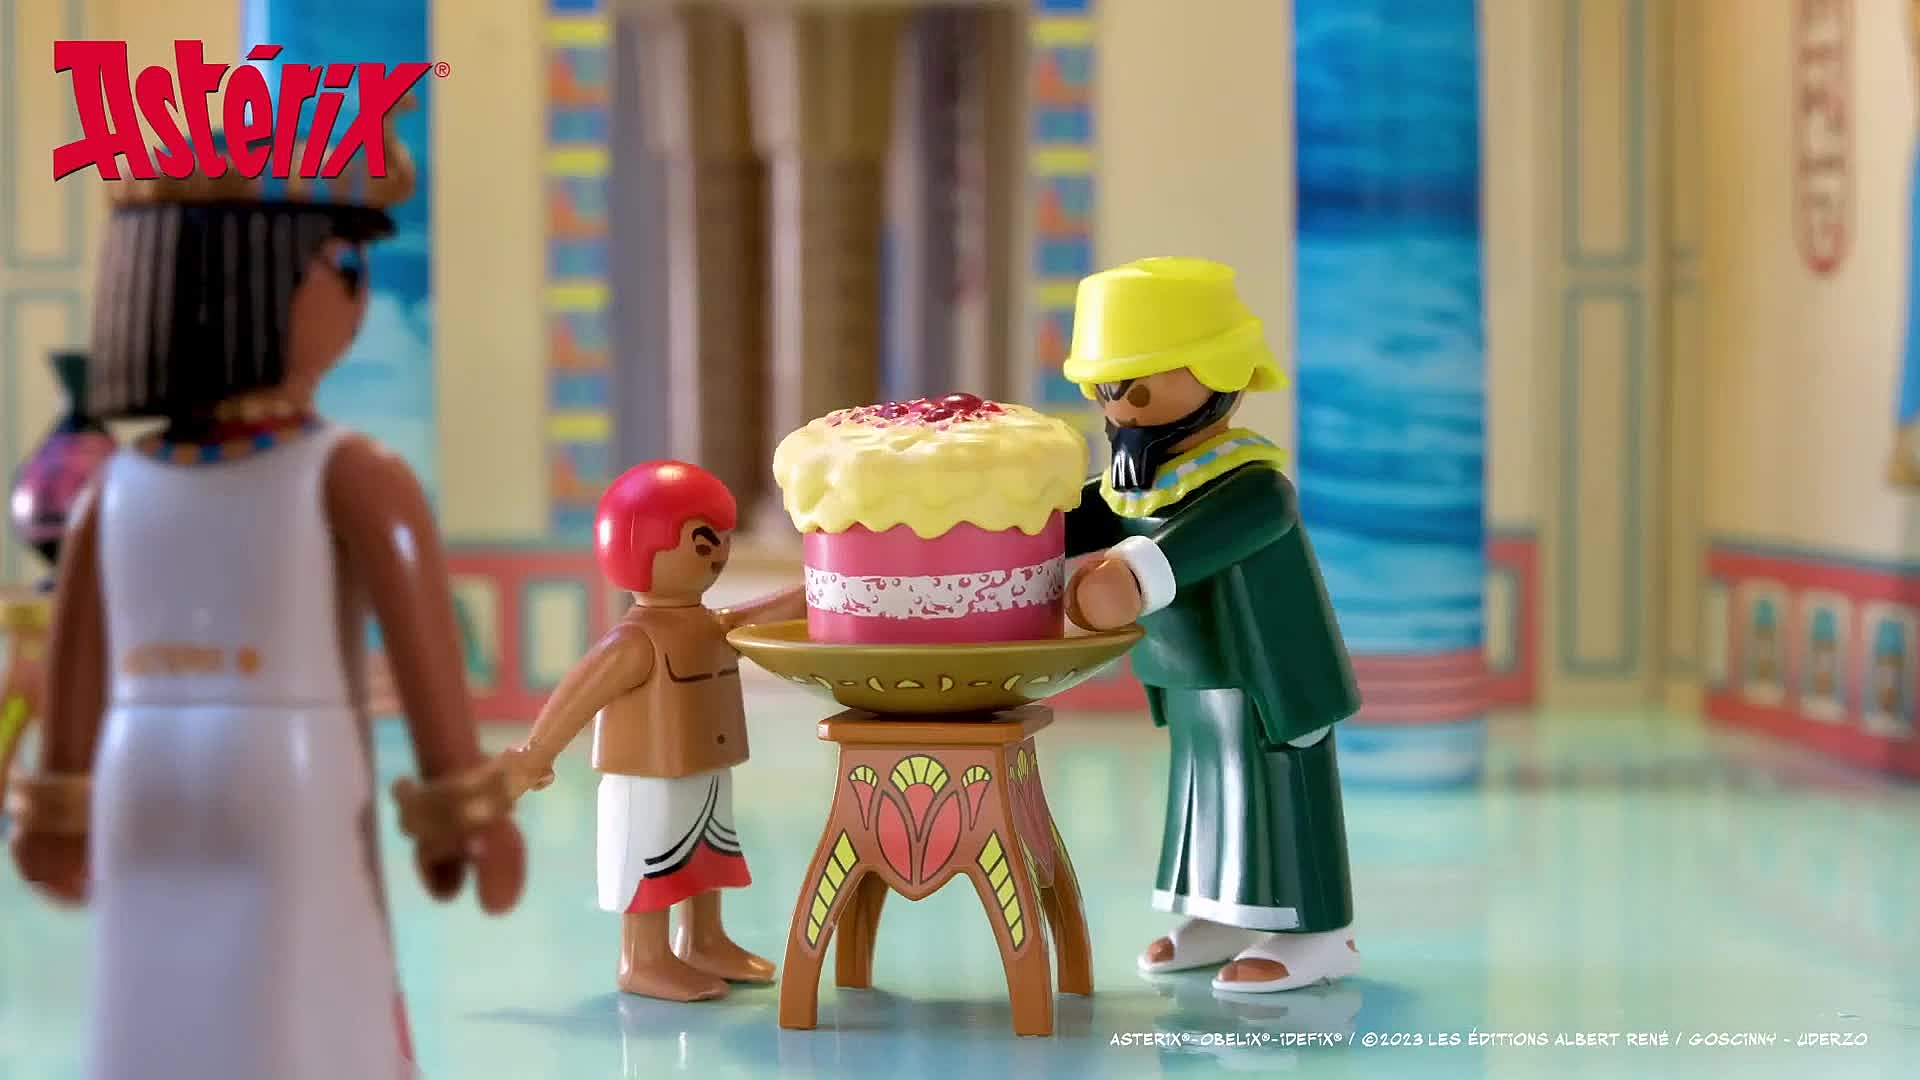 Playmobil asterix: paletabis y la tarta envenenada